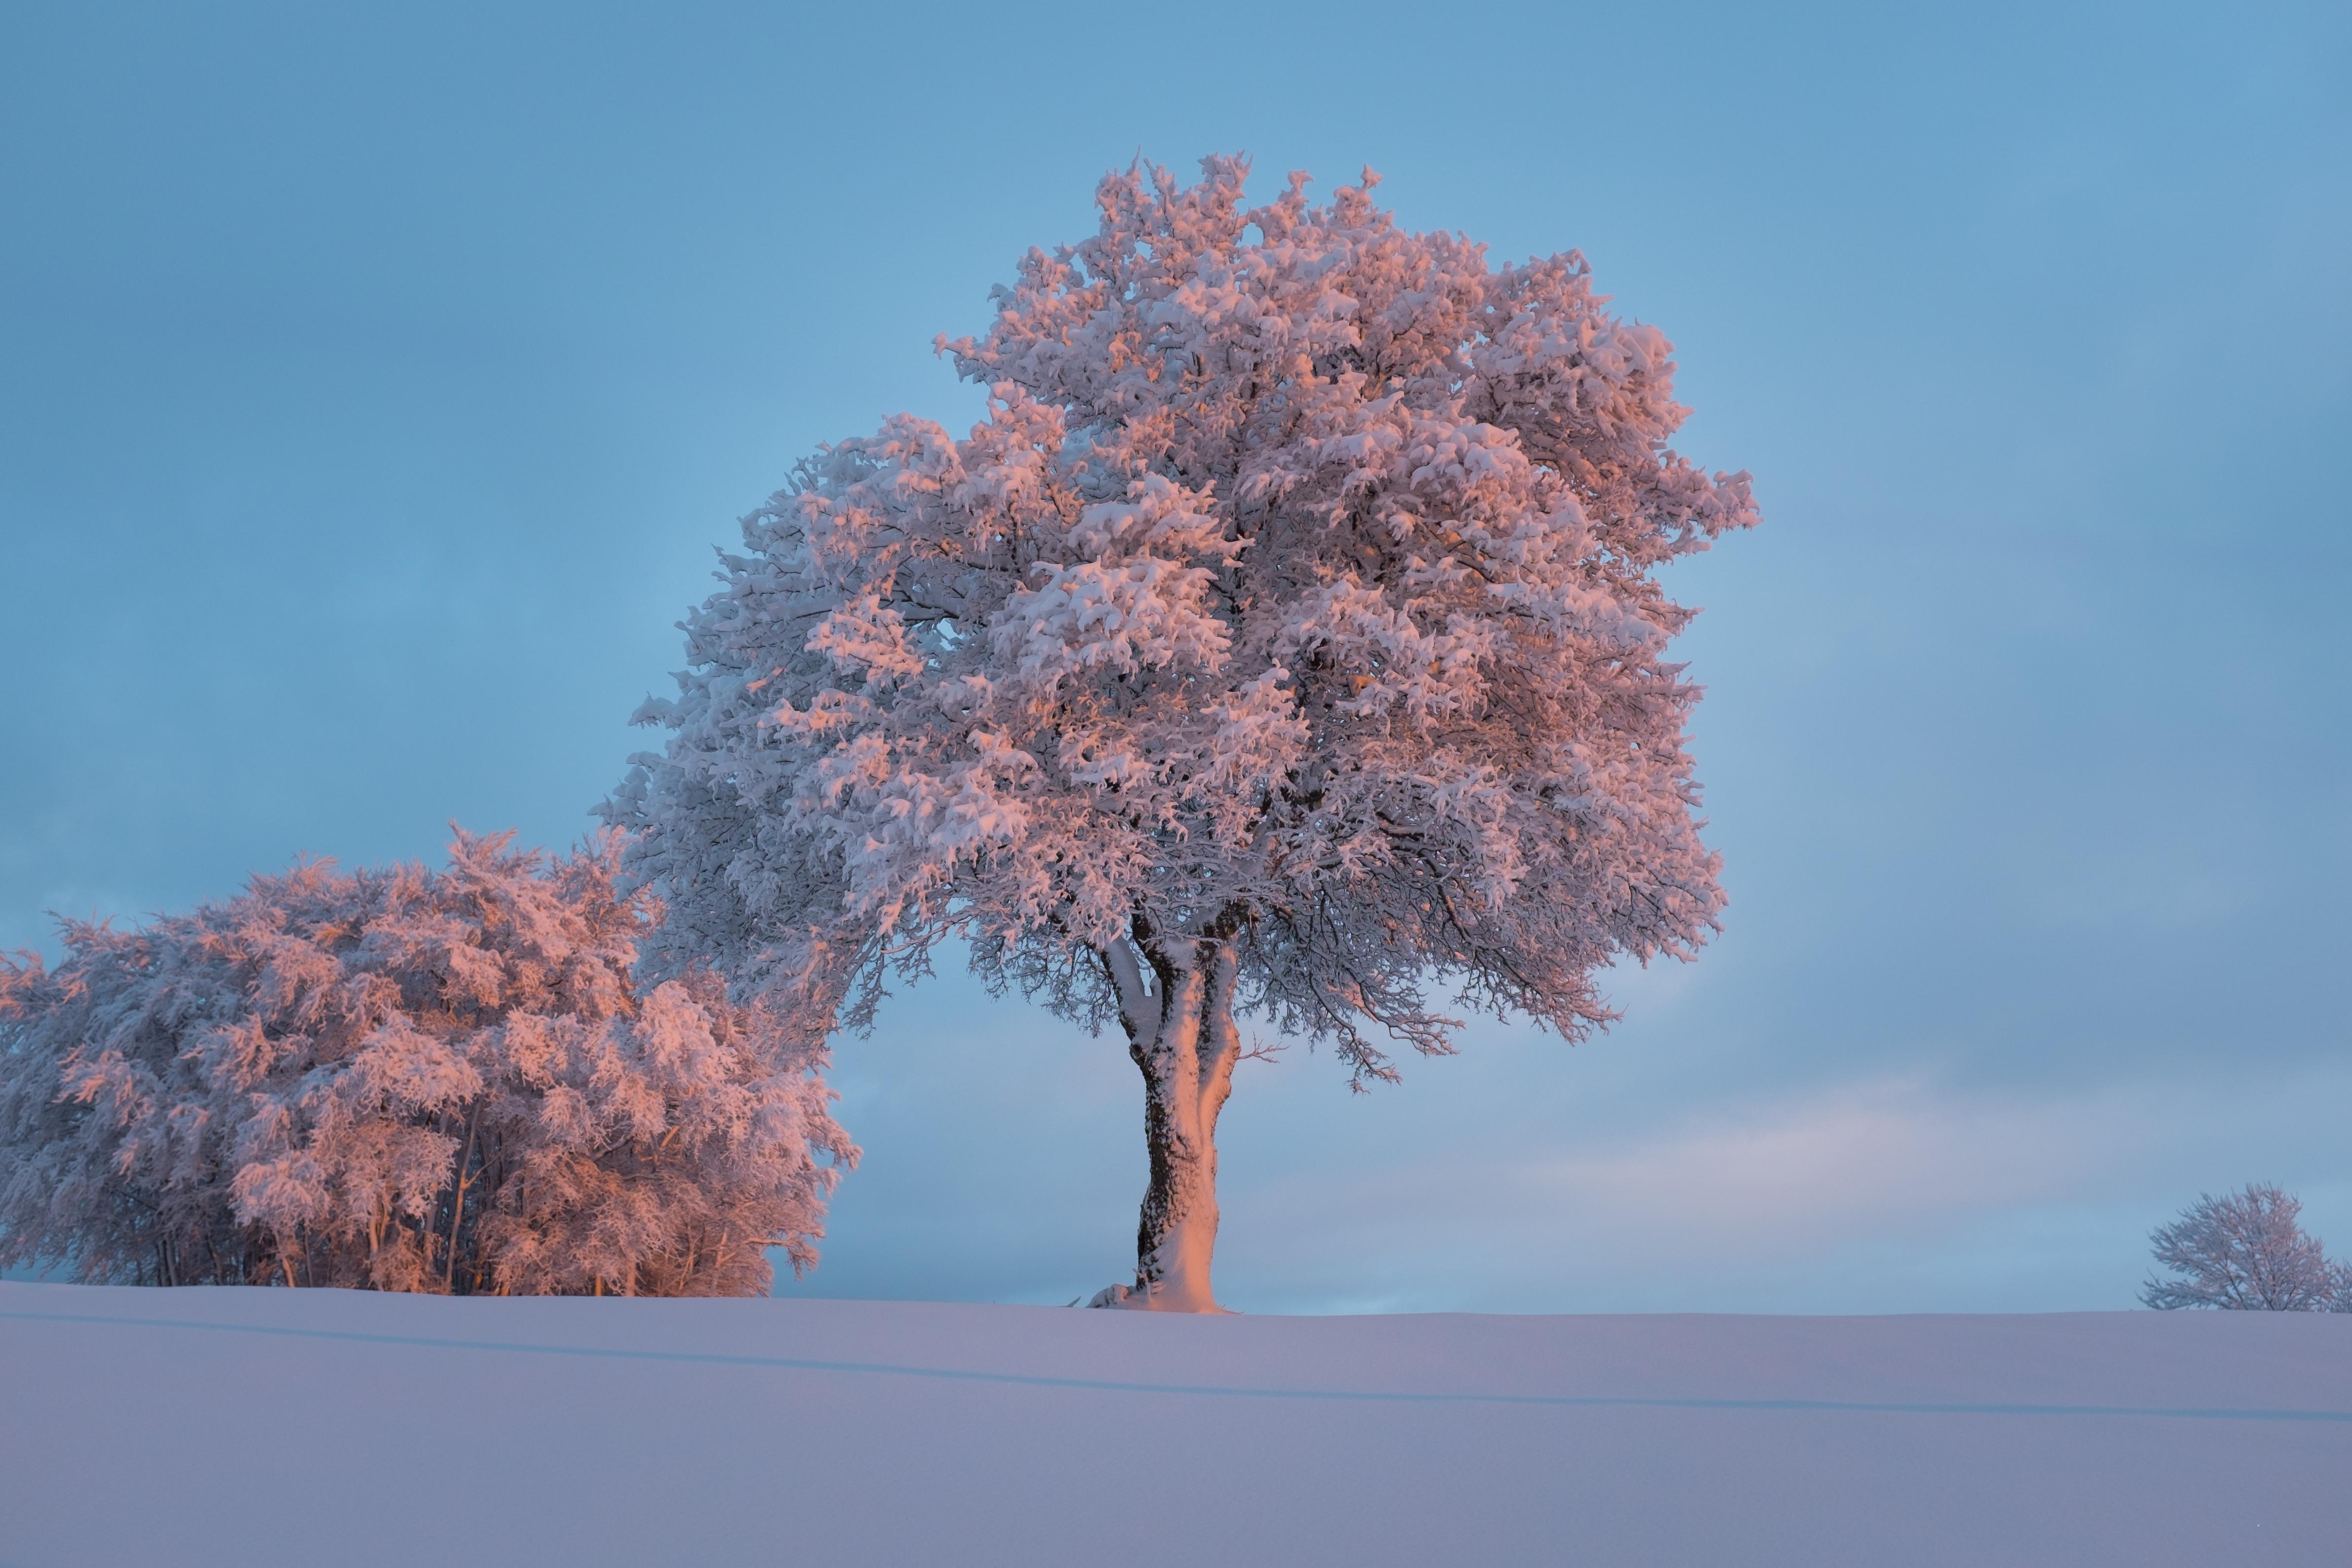 Фото мороз деревья в снегу сугробы - бесплатные картинки на Fonwall